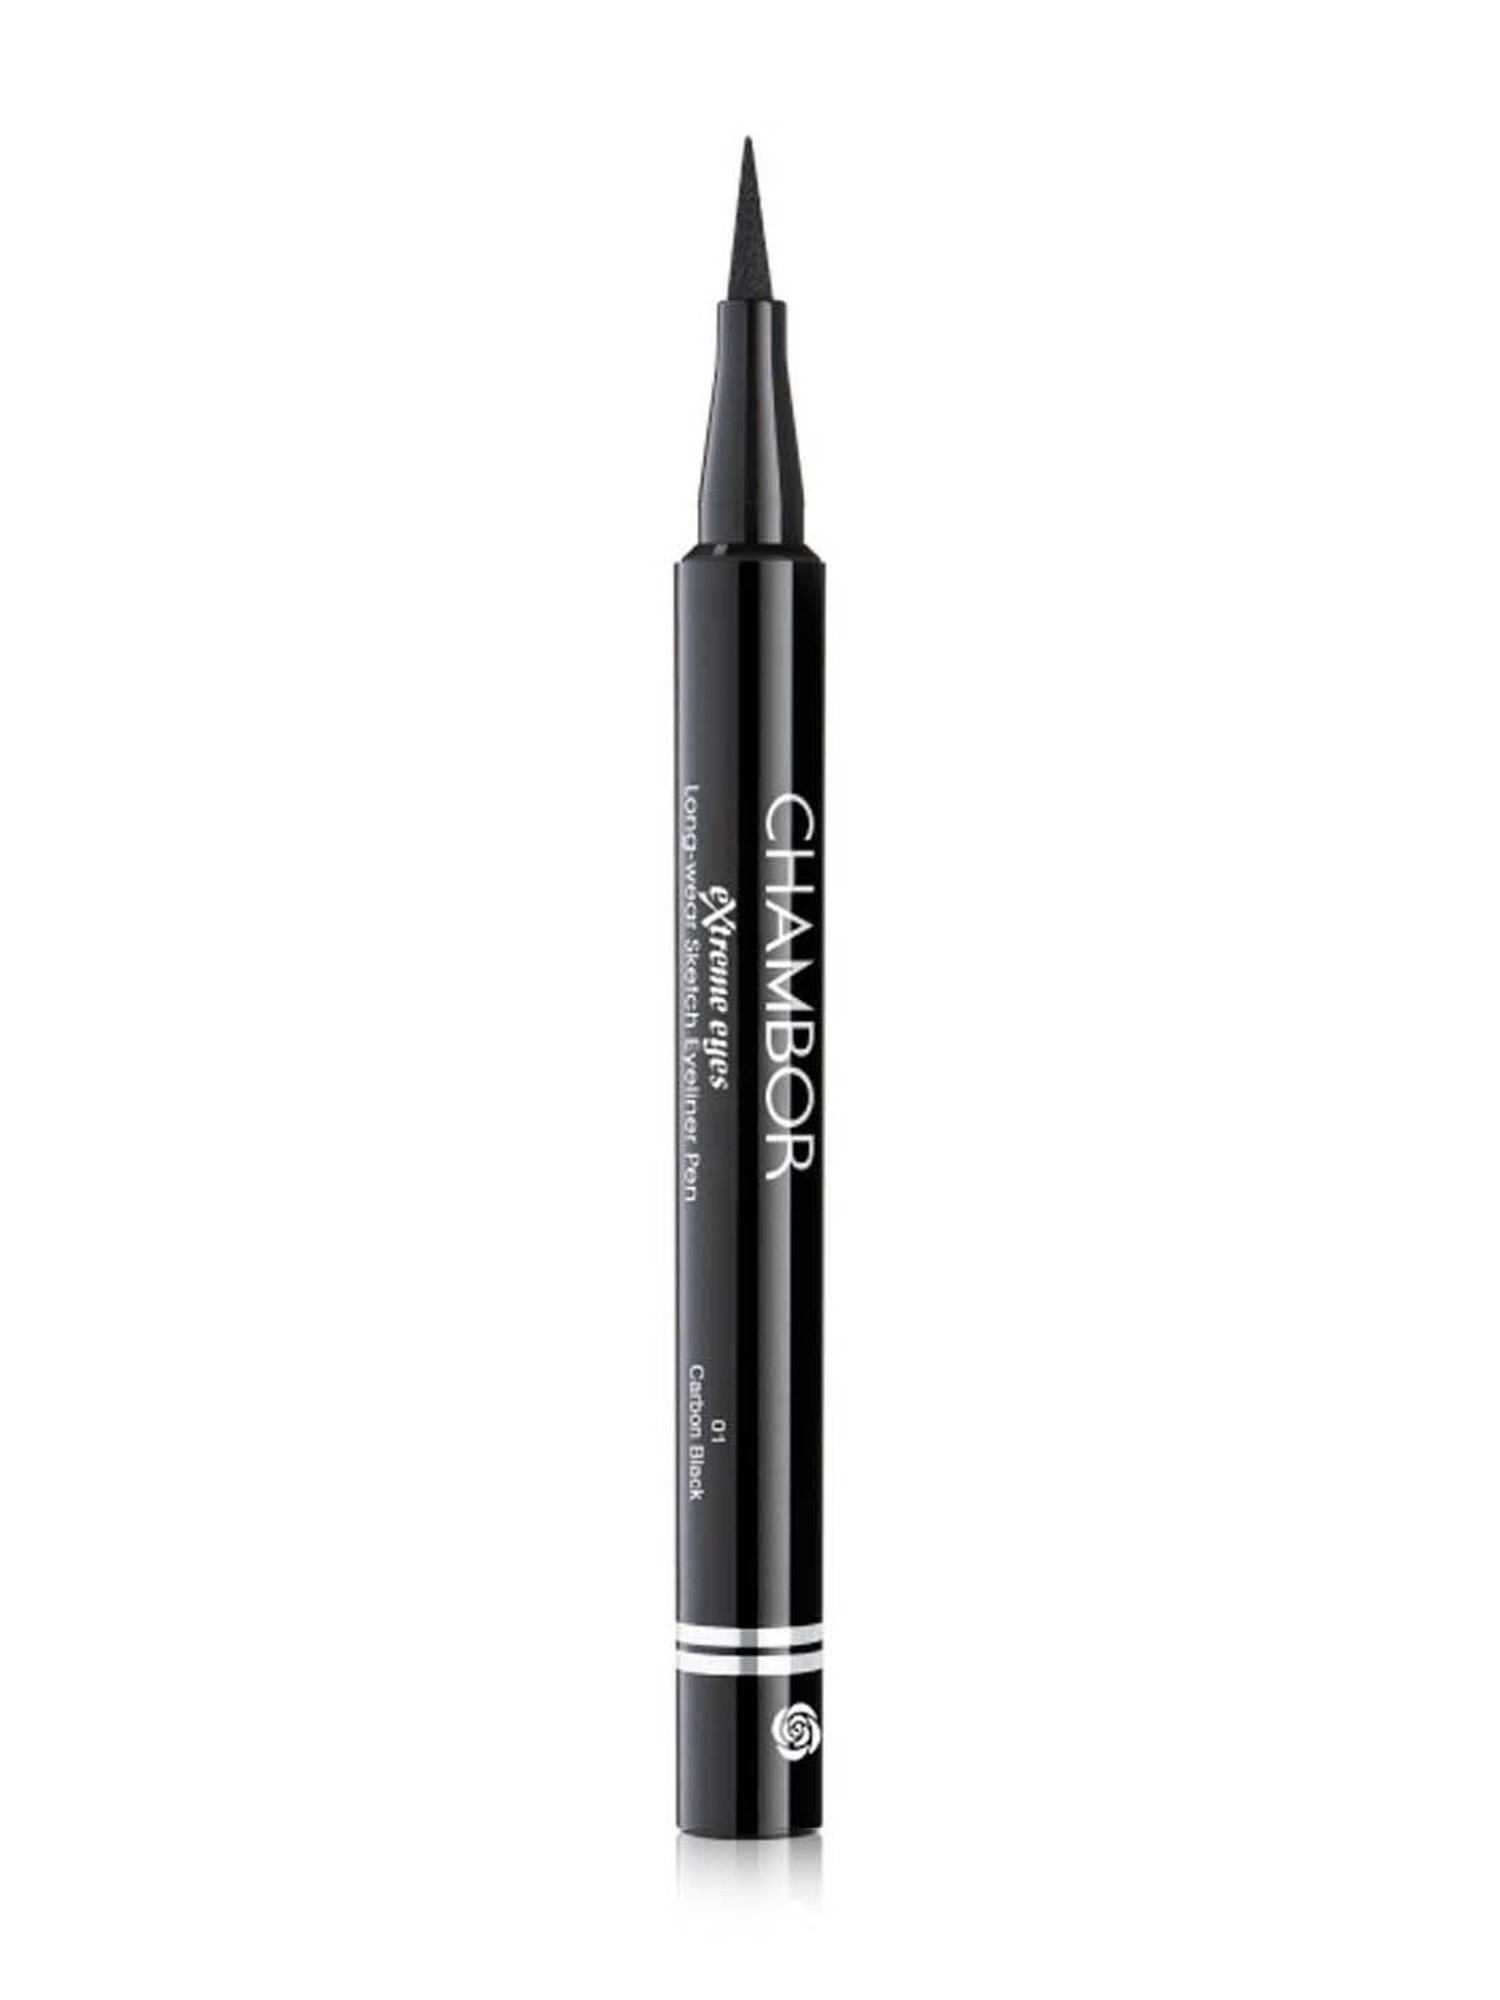 Make-Up & Nails | Sketch Eyeliner 36H Long Lasting Waterproof | Freeup